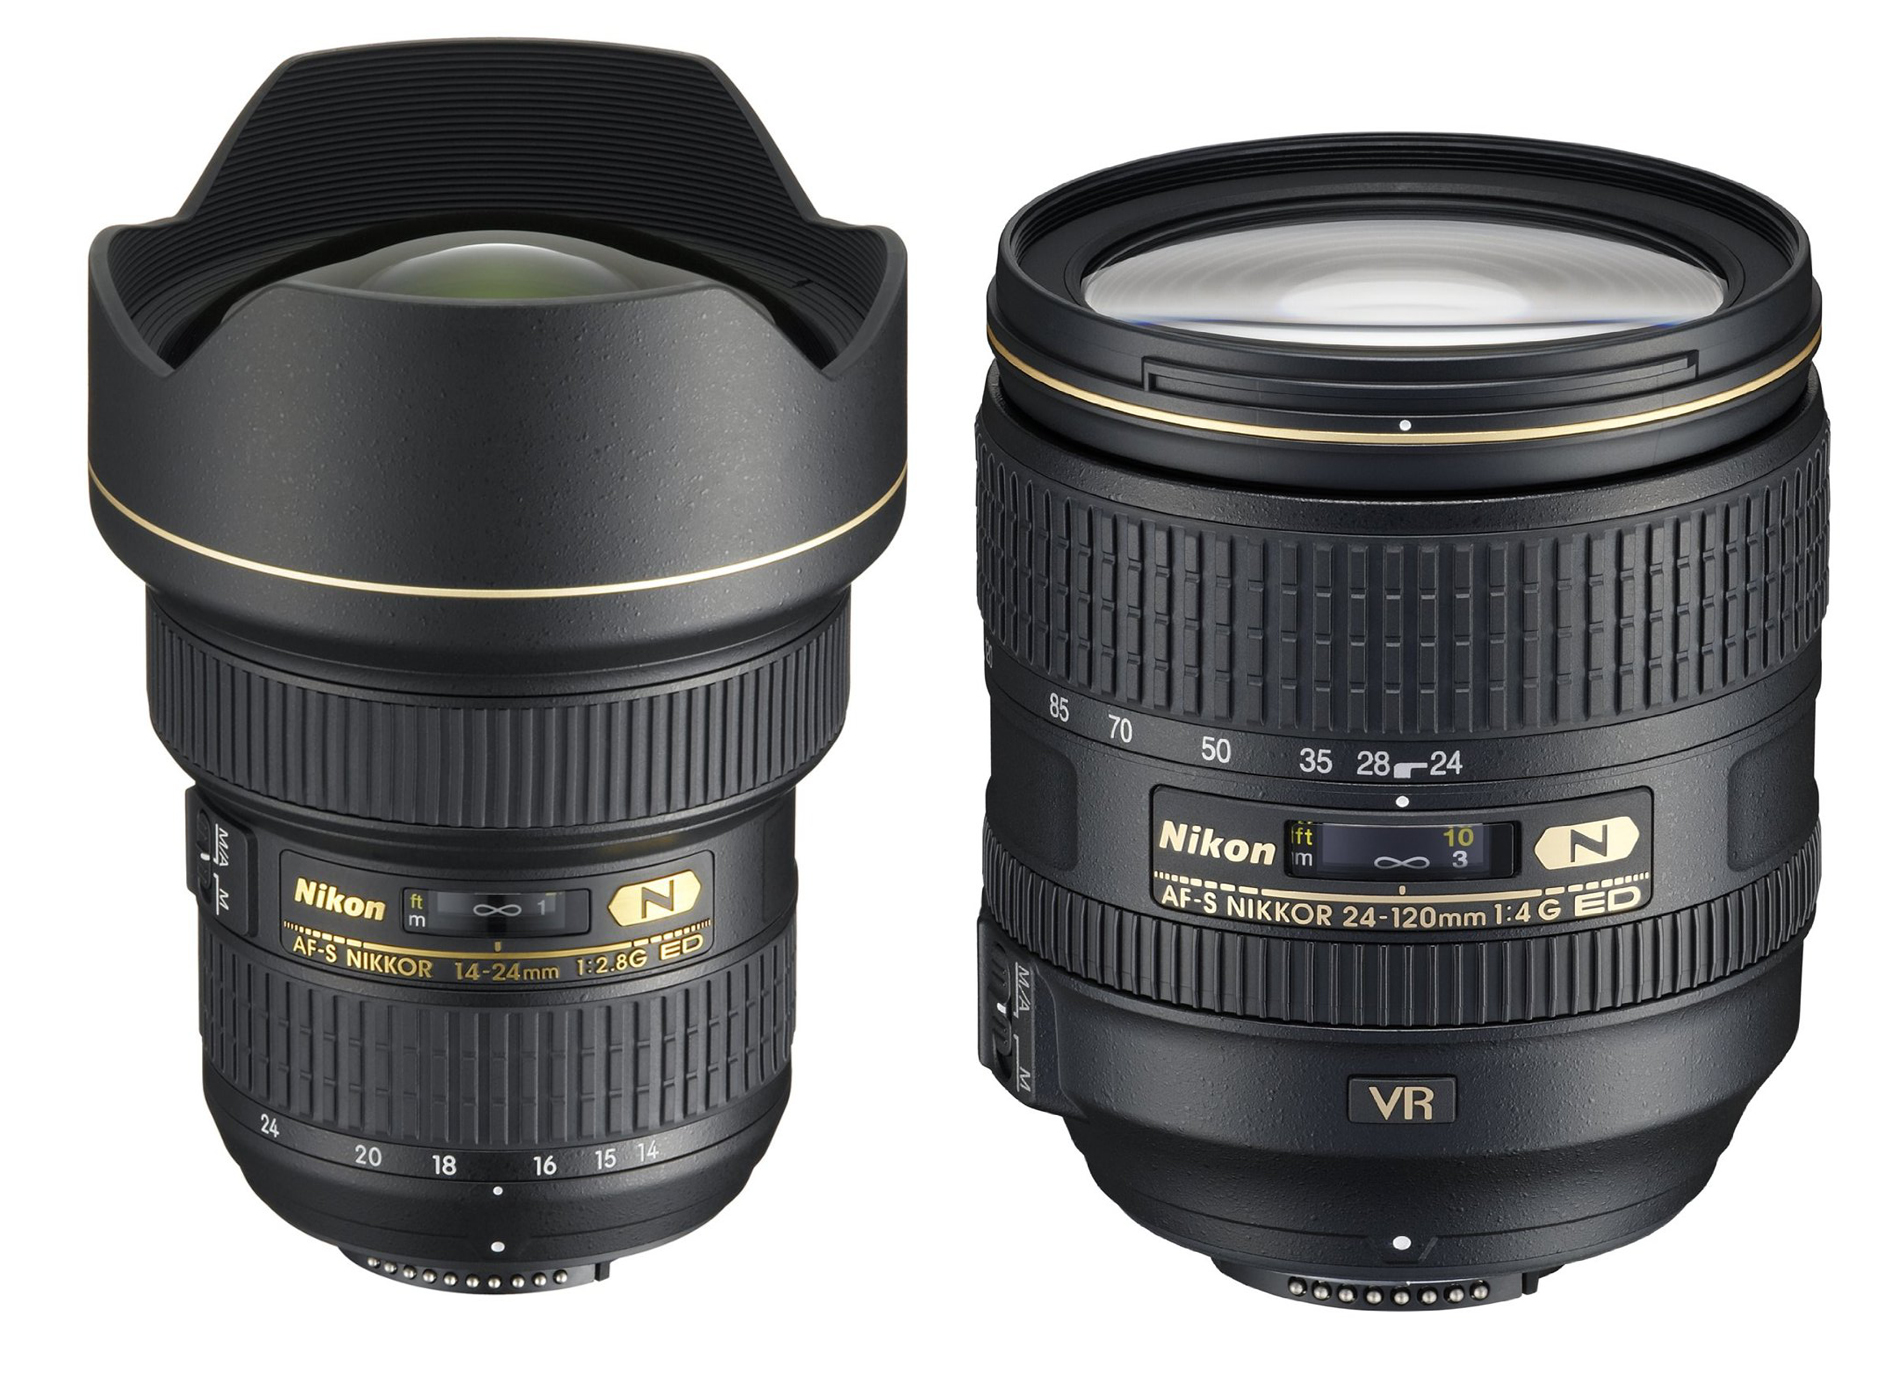 Nikon AF-S NIKKOR 24-120mm F/4G ED VR Deals/ Cheapest Price | Lens Rumors